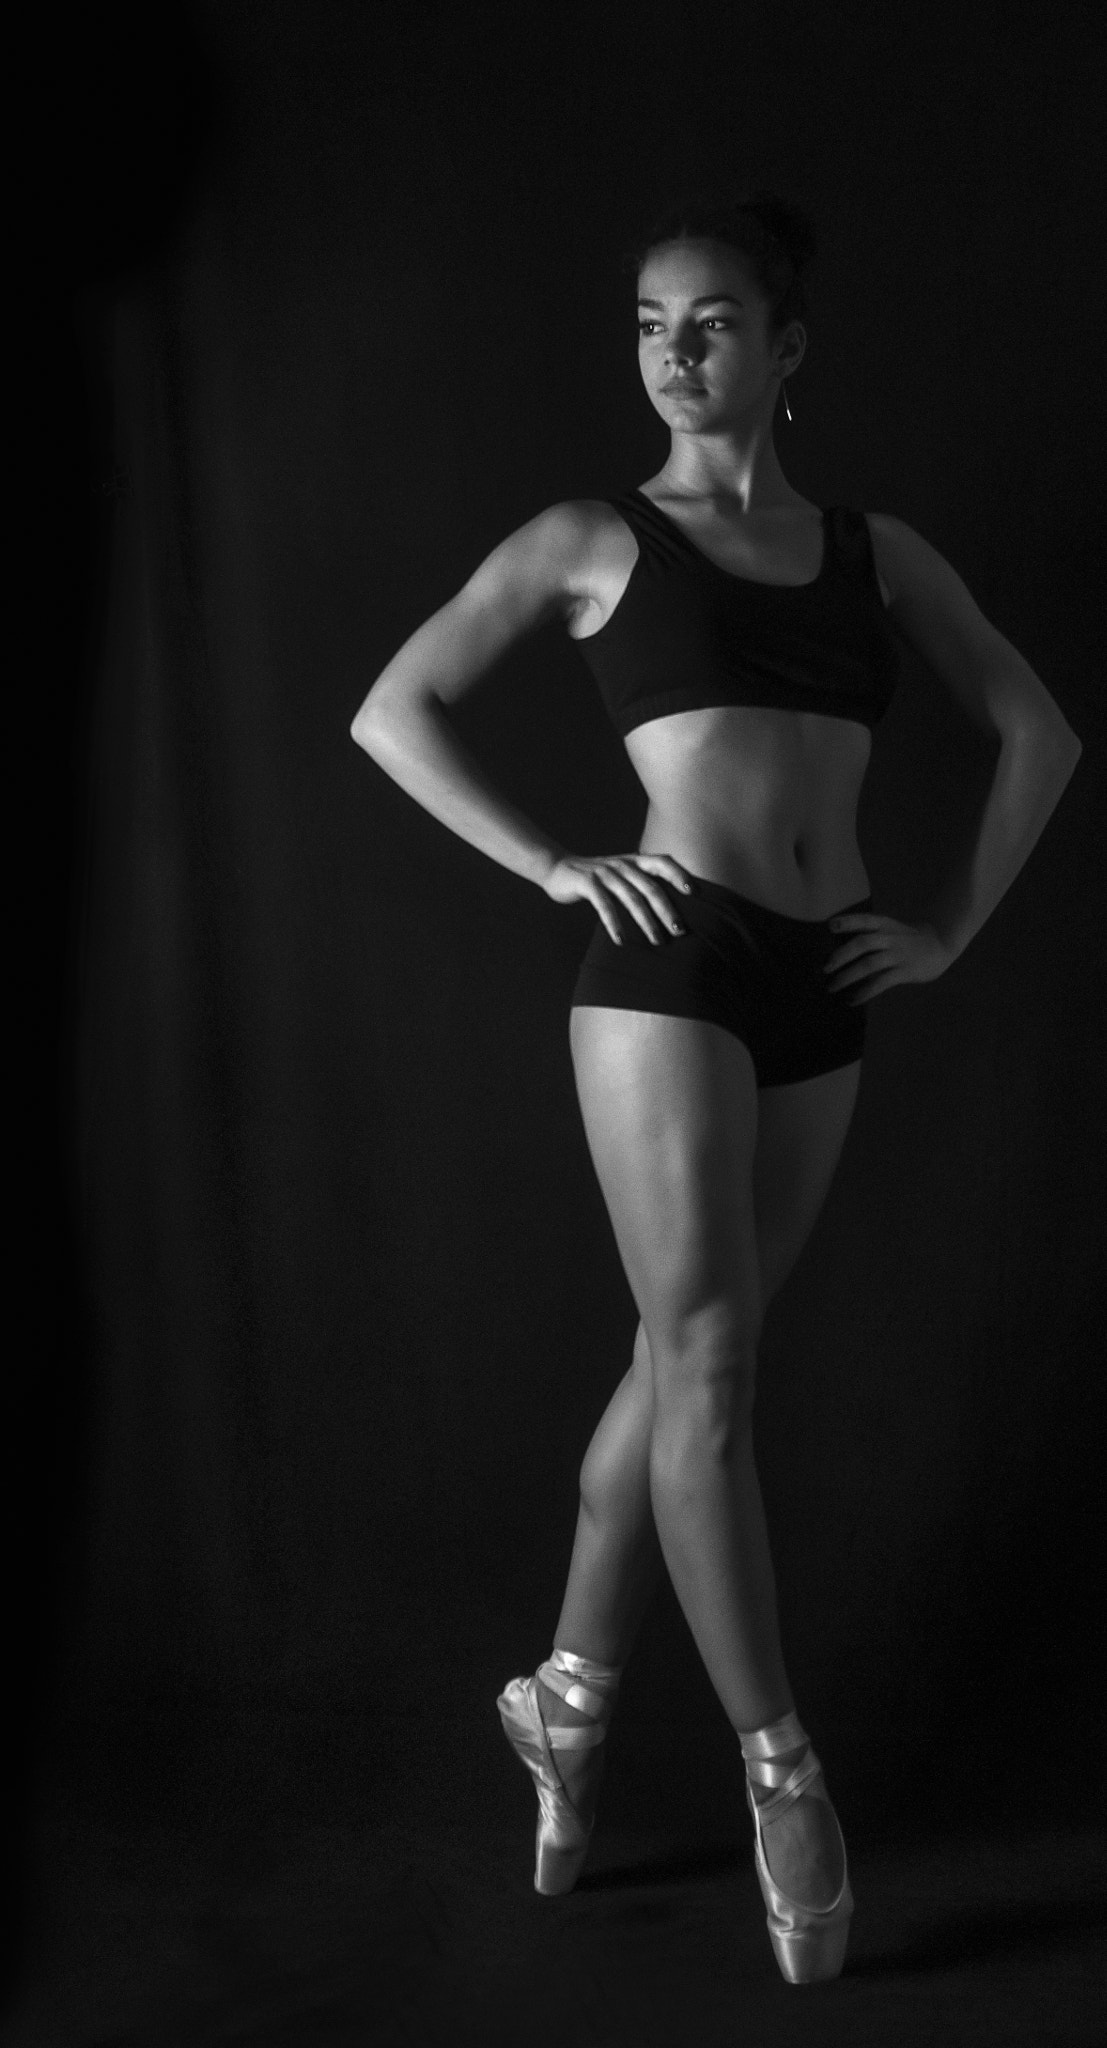 AF Nikkor 35mm f/2 sample photo. Ballerina photography